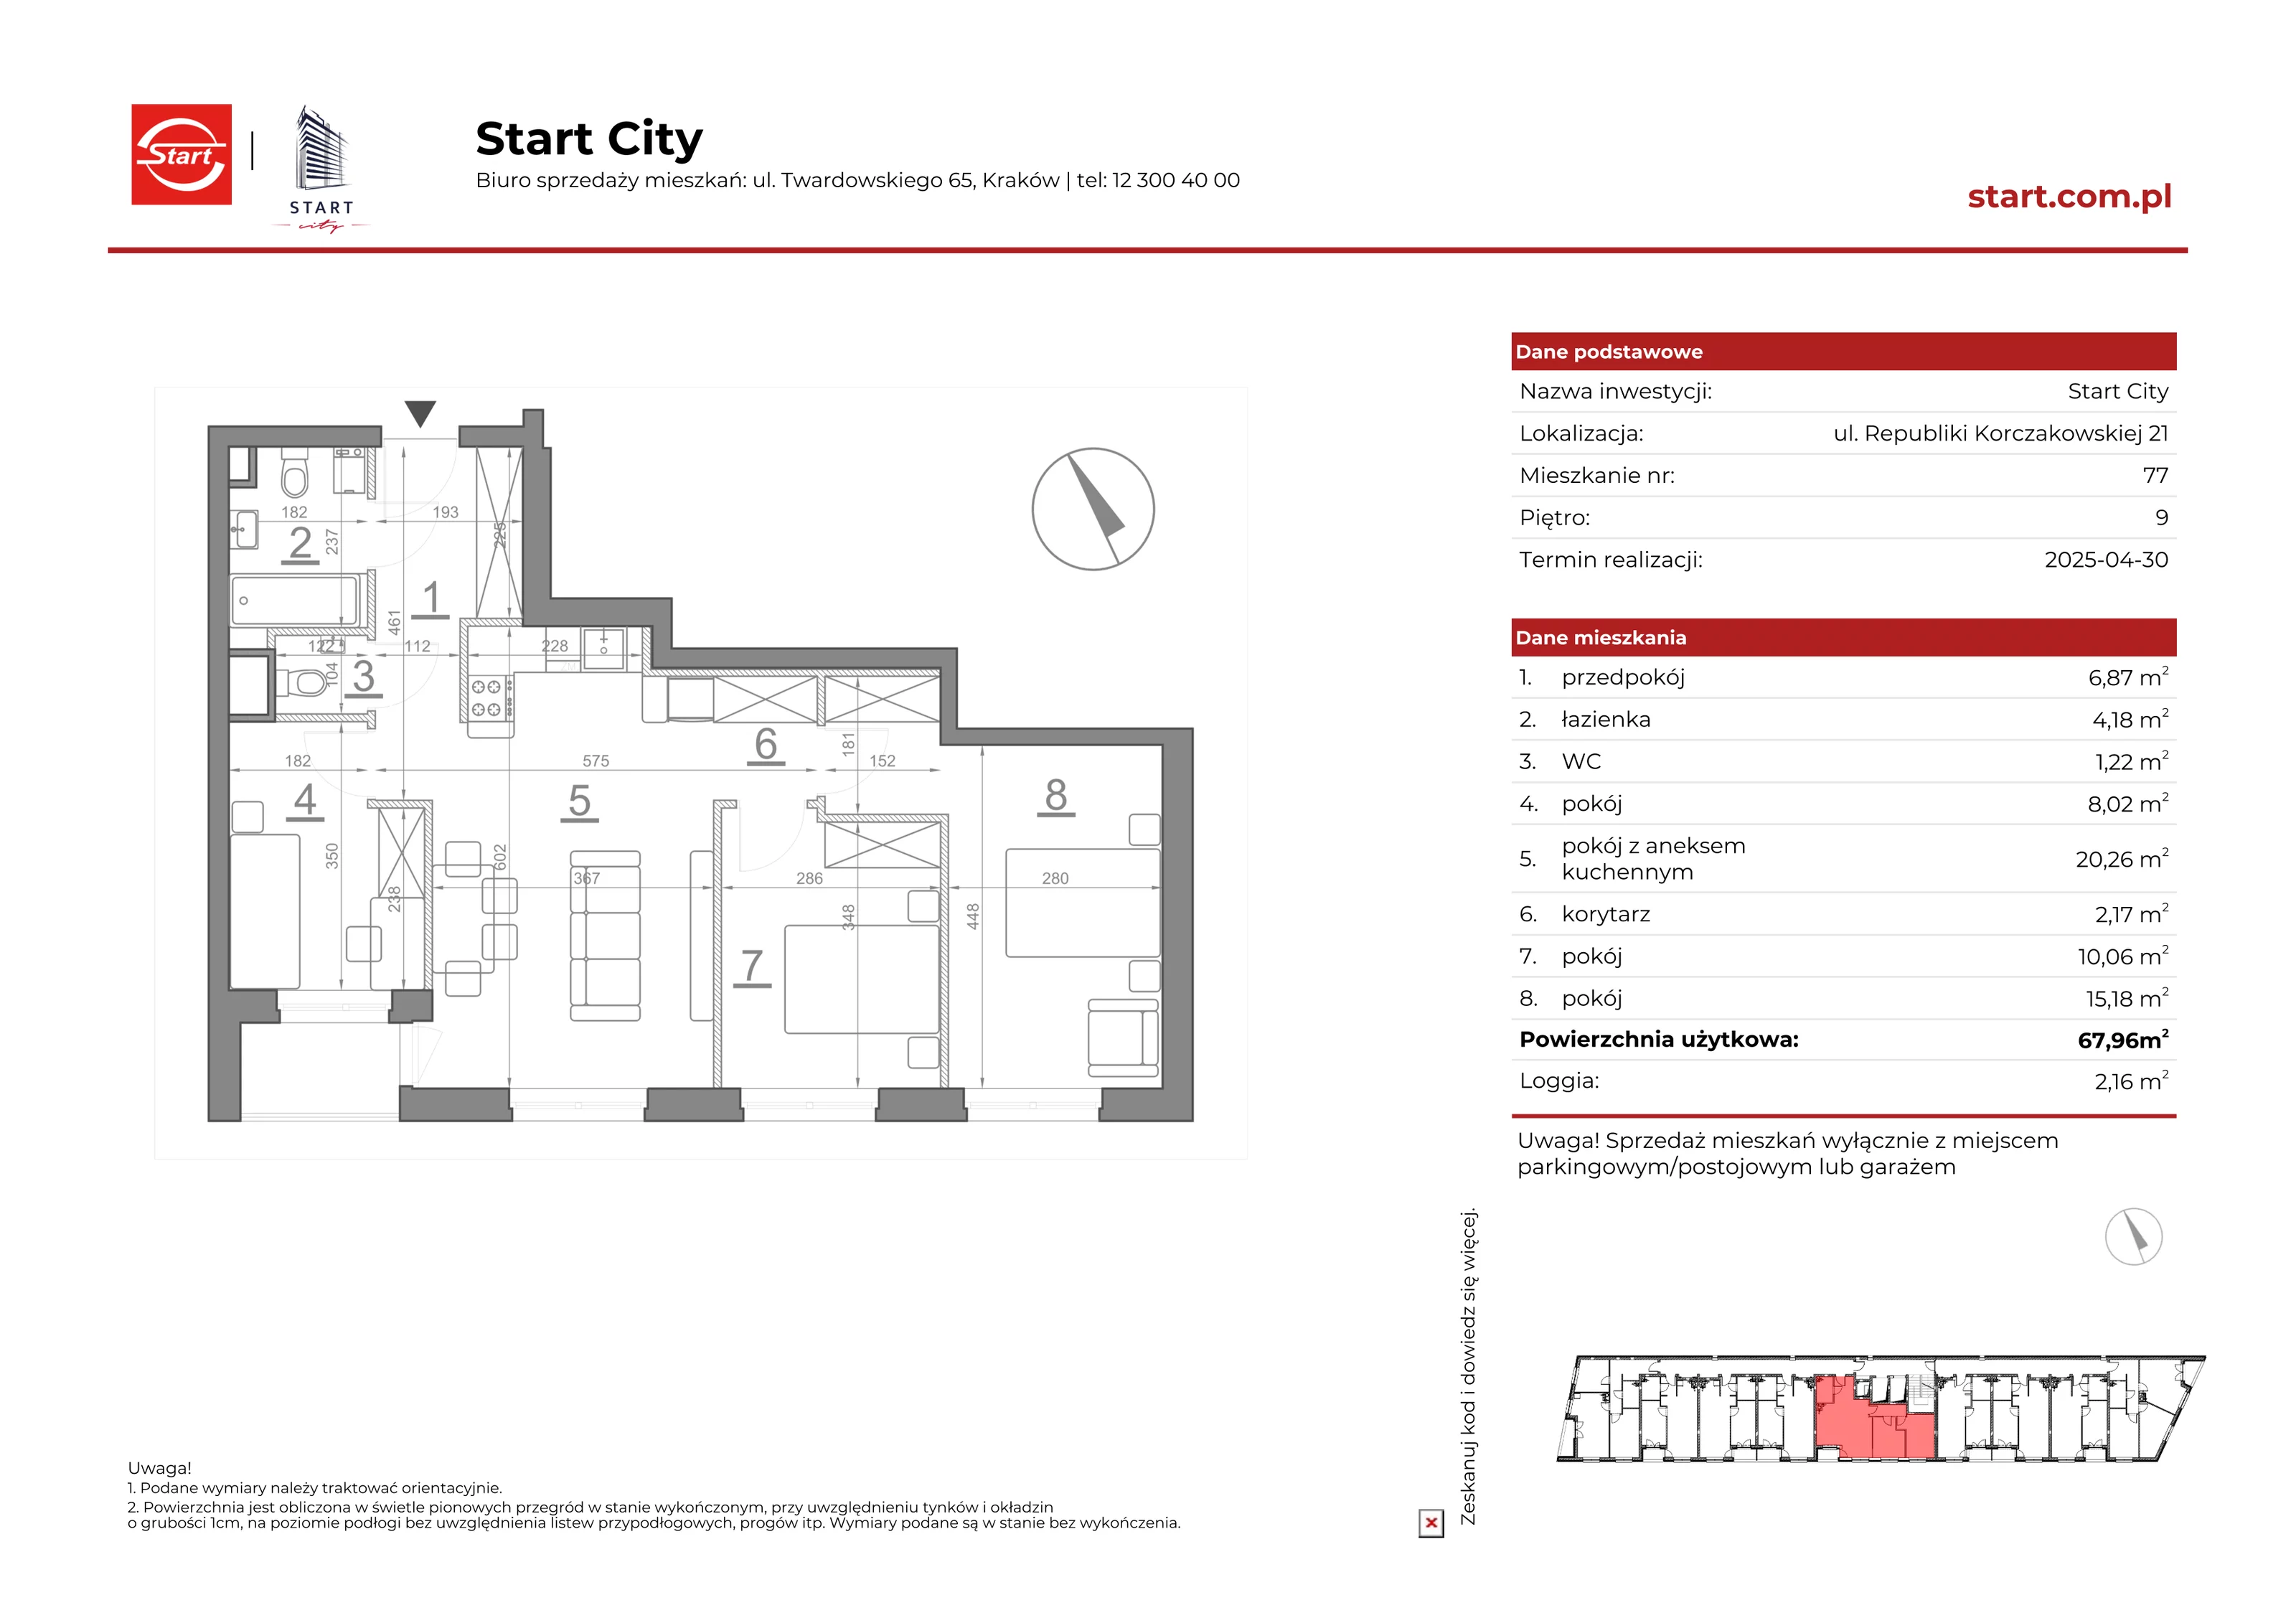 Mieszkanie 67,96 m², piętro 9, oferta nr 21/77, Start City, Kraków, Bieżanów-Prokocim, ul. Republiki Korczakowskiej 21